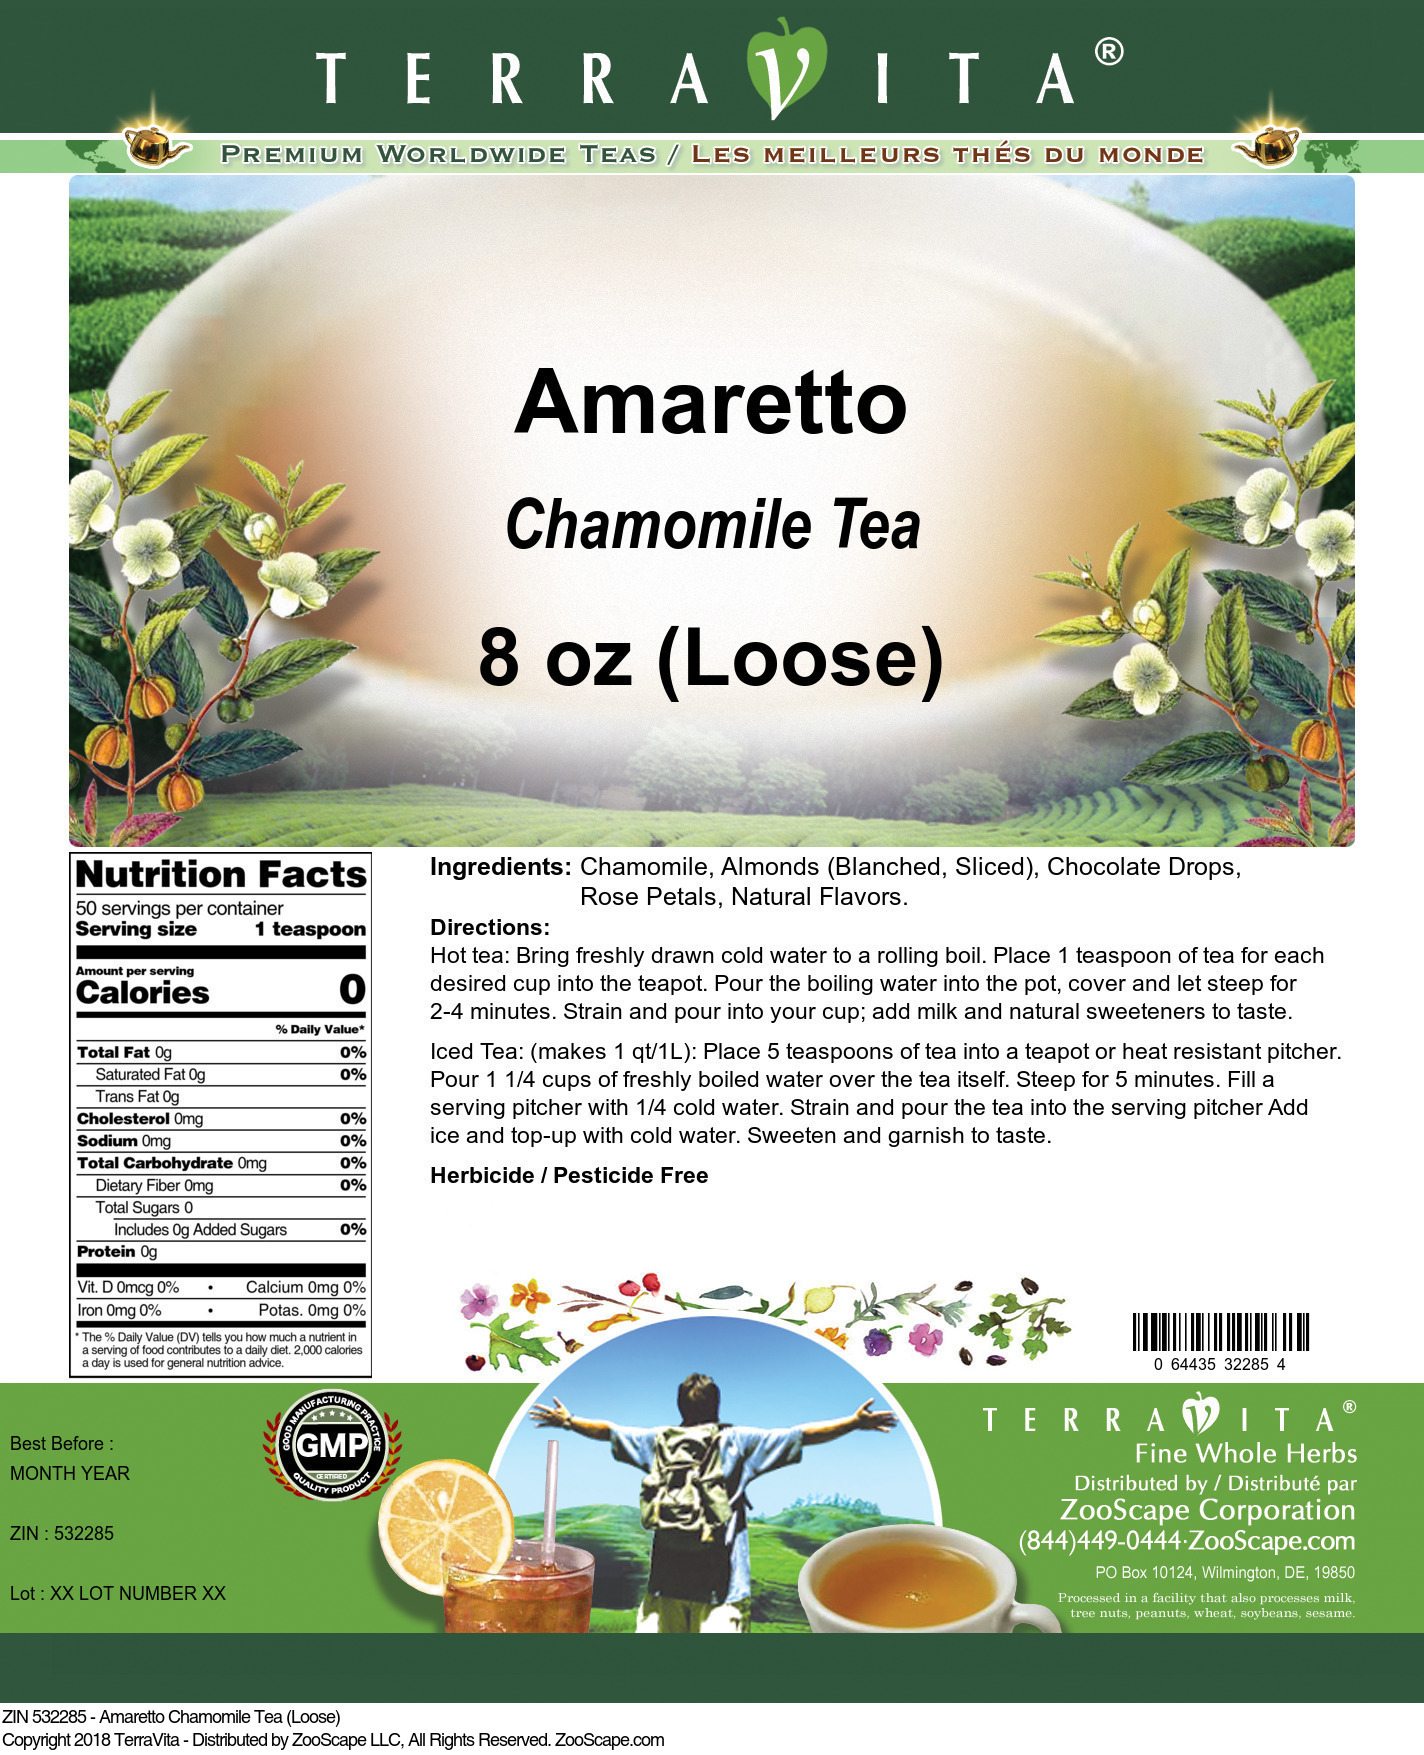 Amaretto Chamomile Tea (Loose) - Label